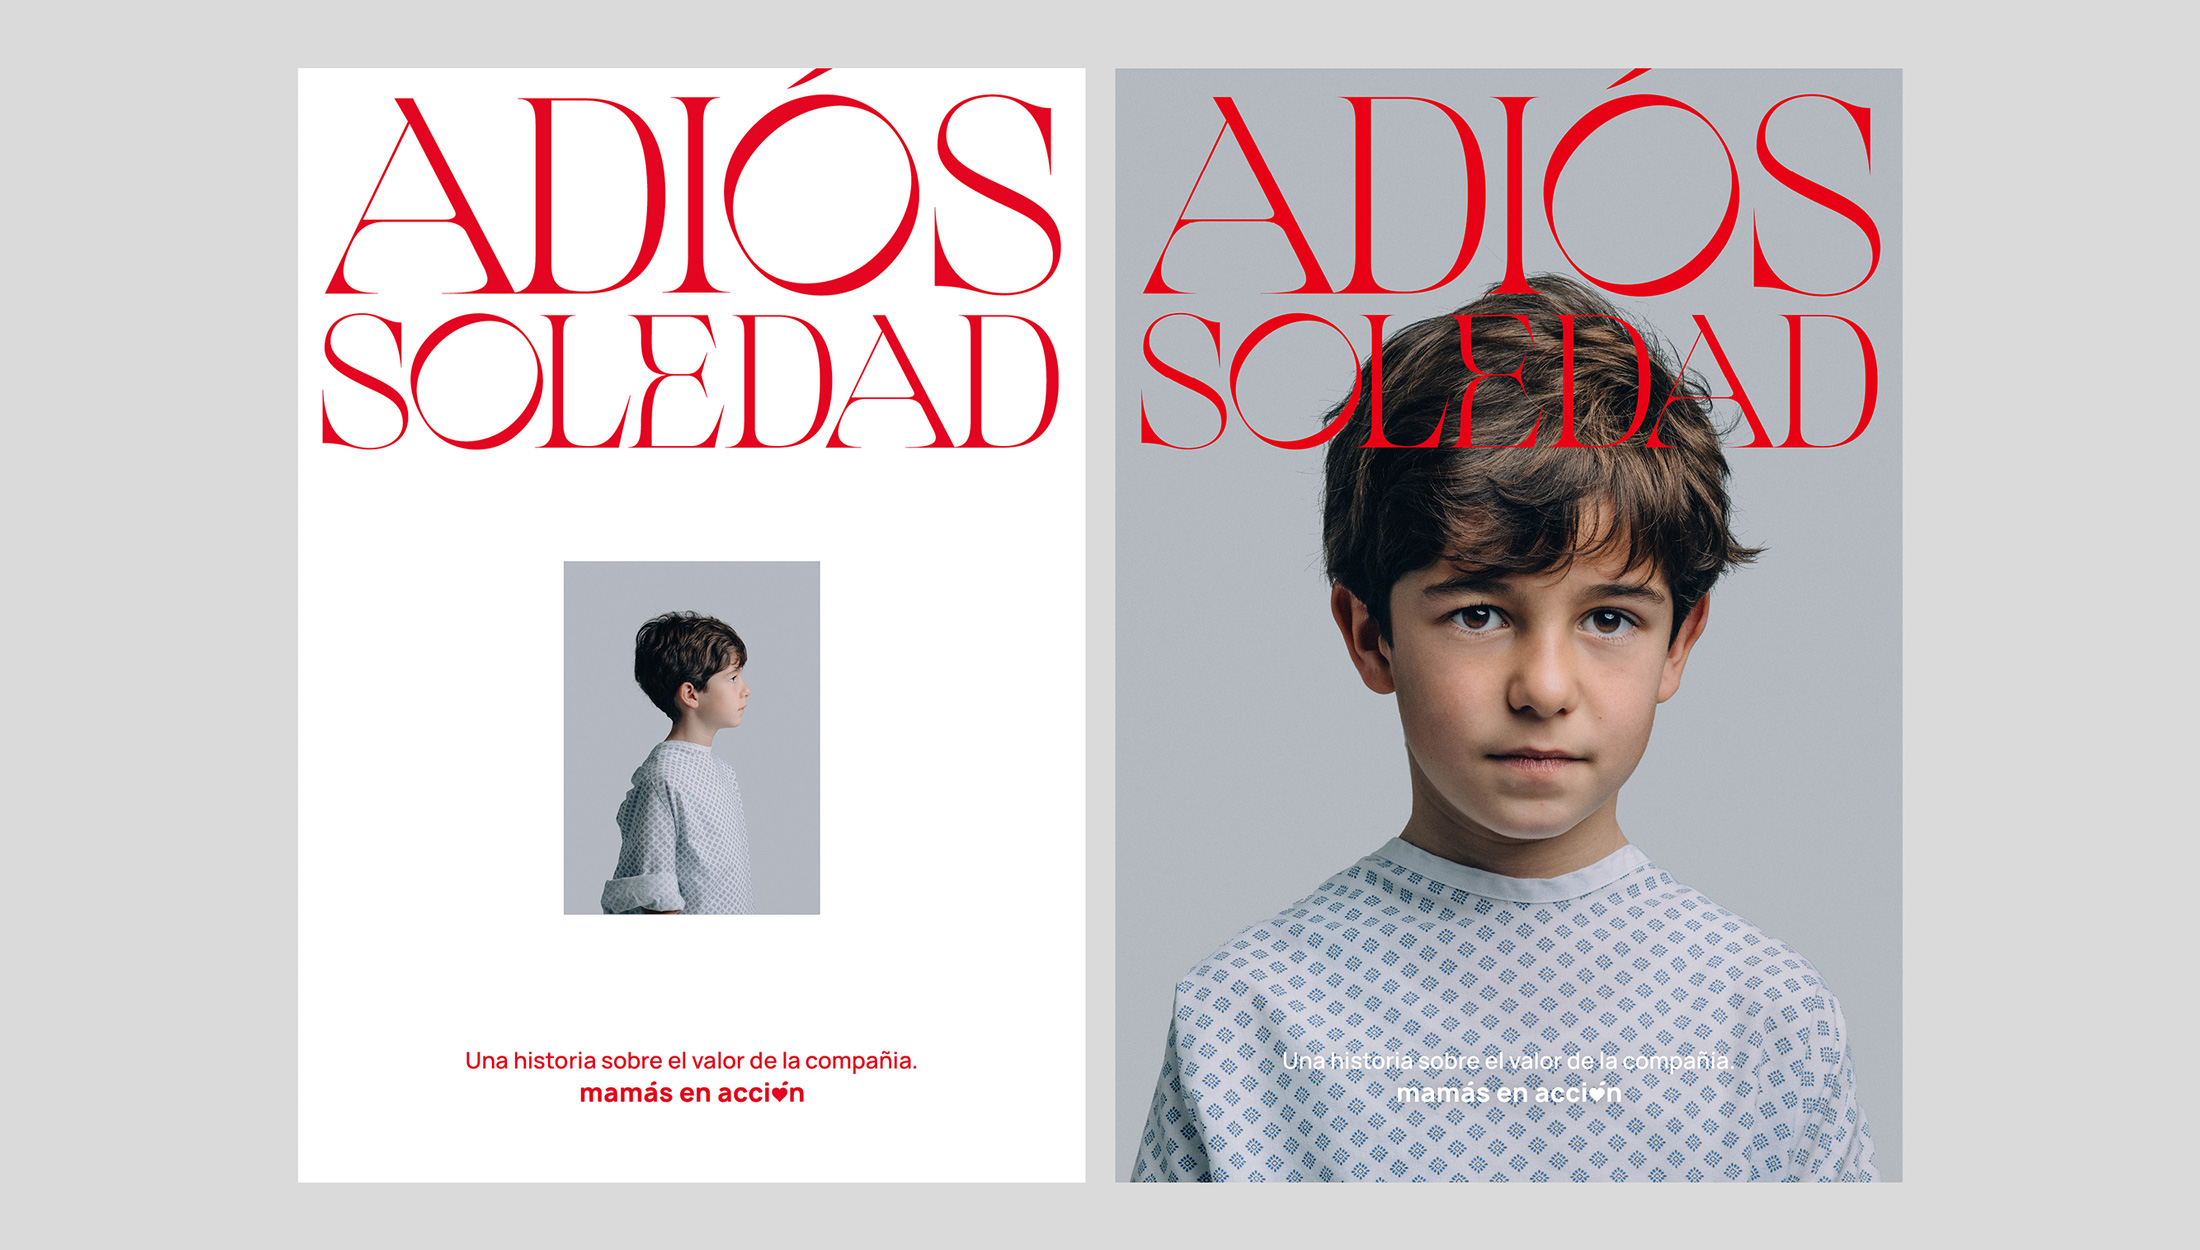 Carteles publicitarios para revista del vídeo Adiós Soledad, con foto de un niño primero de perfil y luego de frente